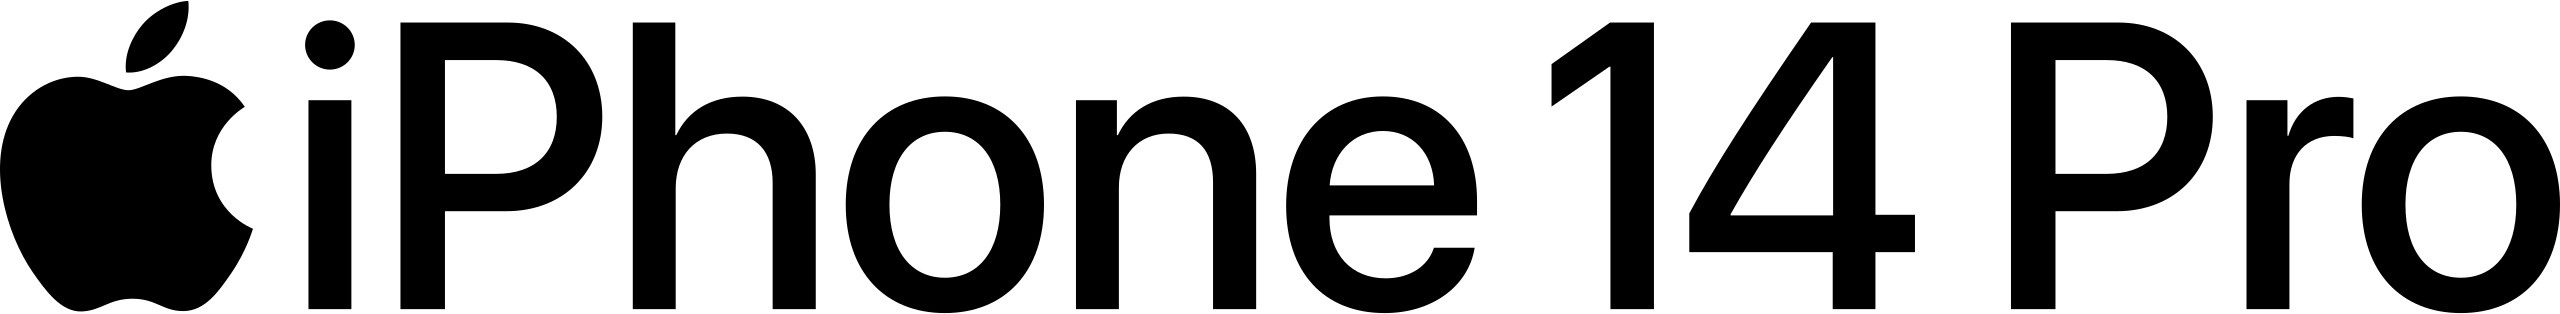 File:IPhone 14 Pro (logo).svg - Wikipedia